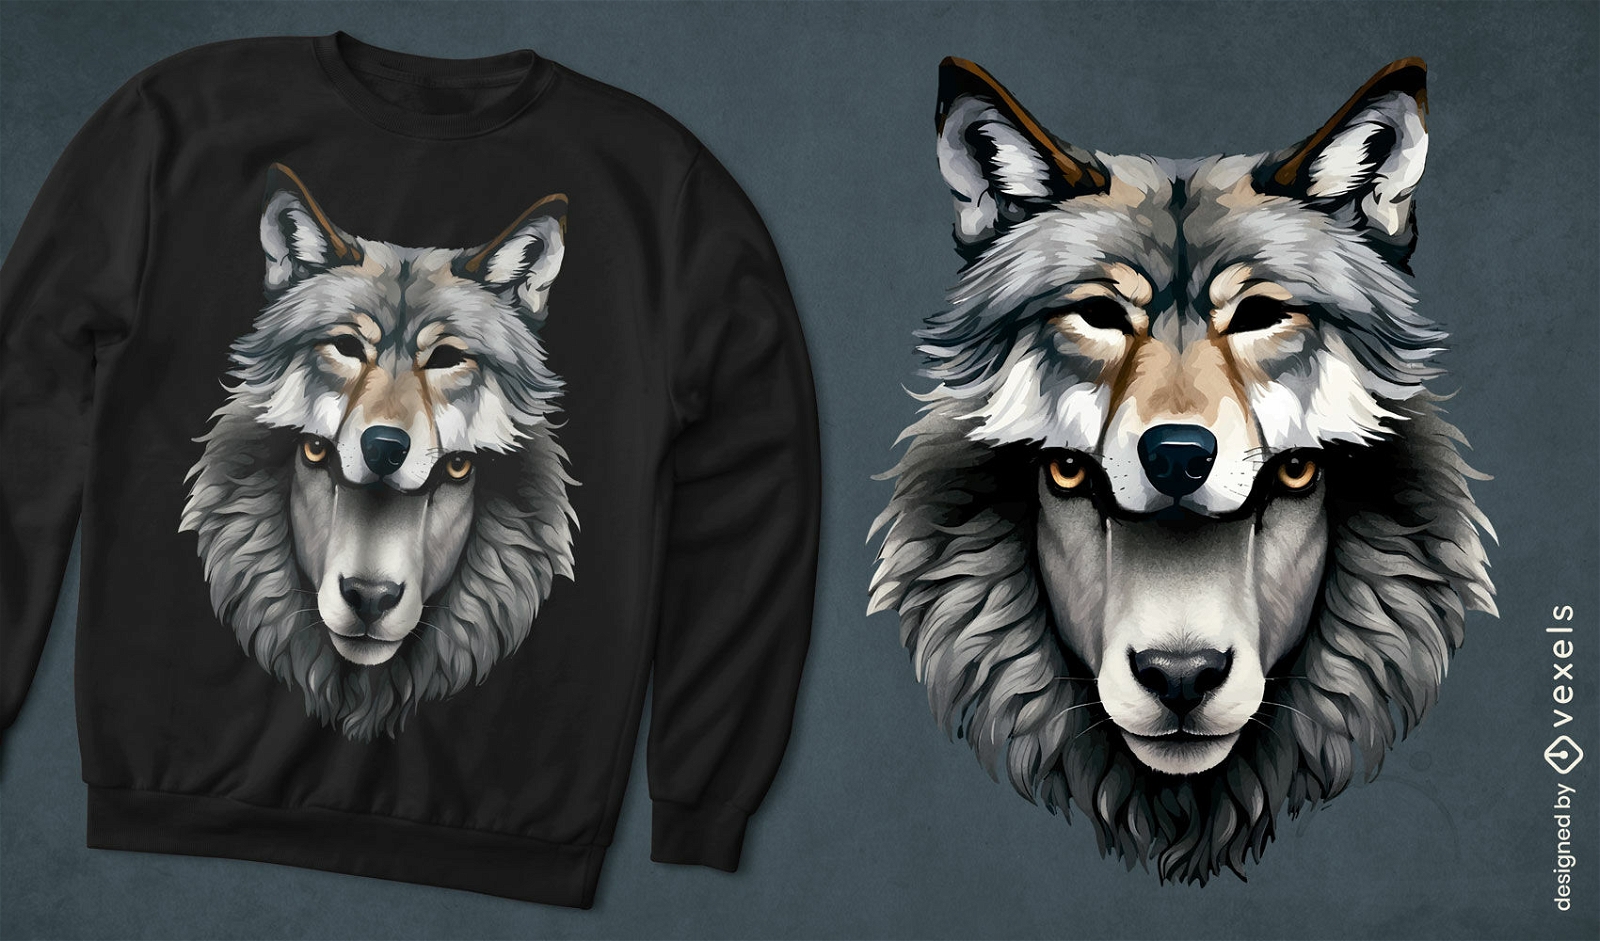 Wolf-sheep t-shirt design